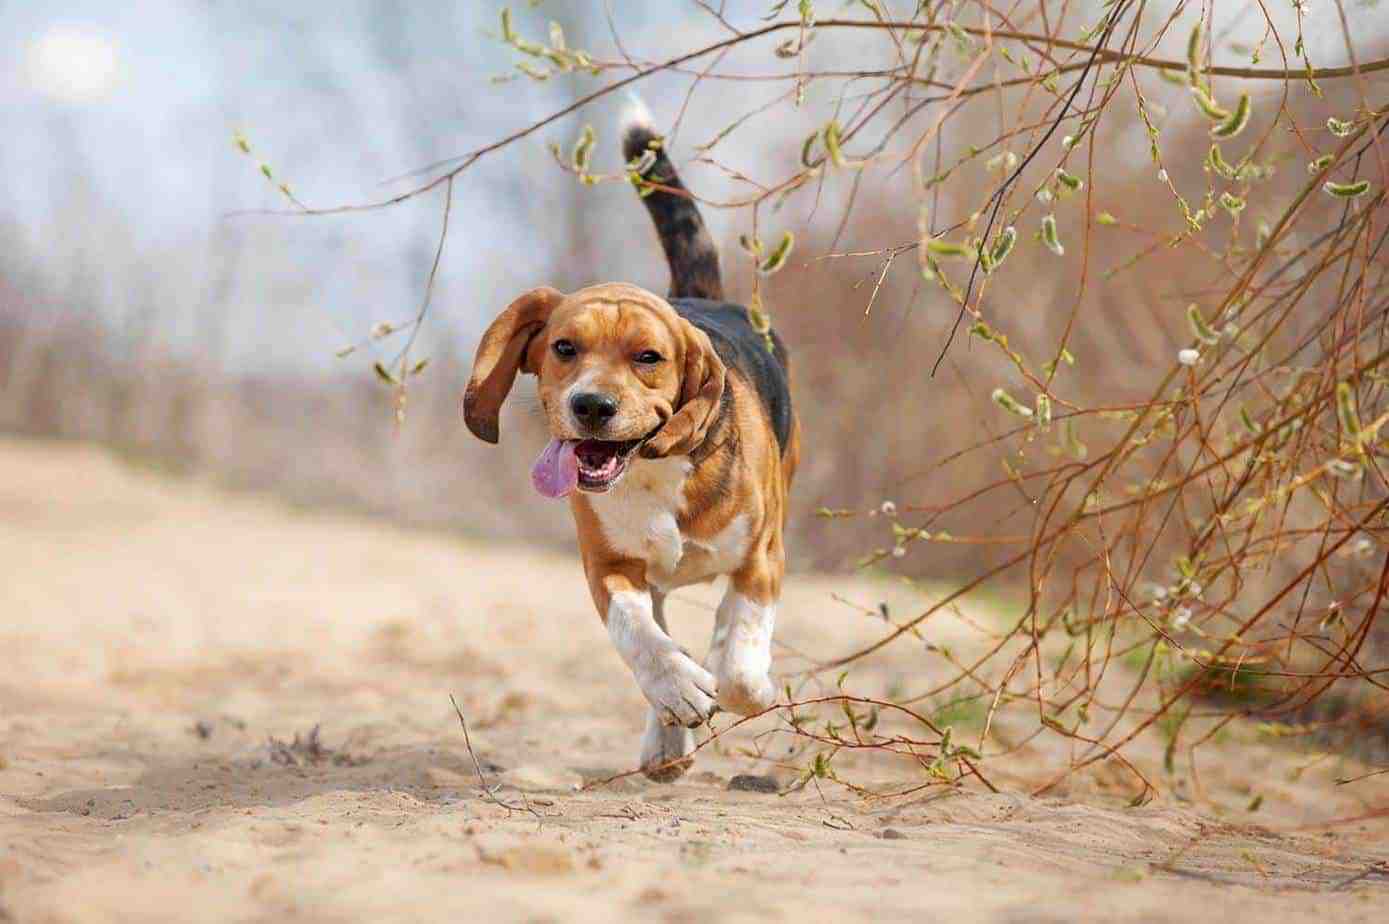 Hoeveel beweging heeft een Beagle nodig. Beagle rent en ziet er moe uit 